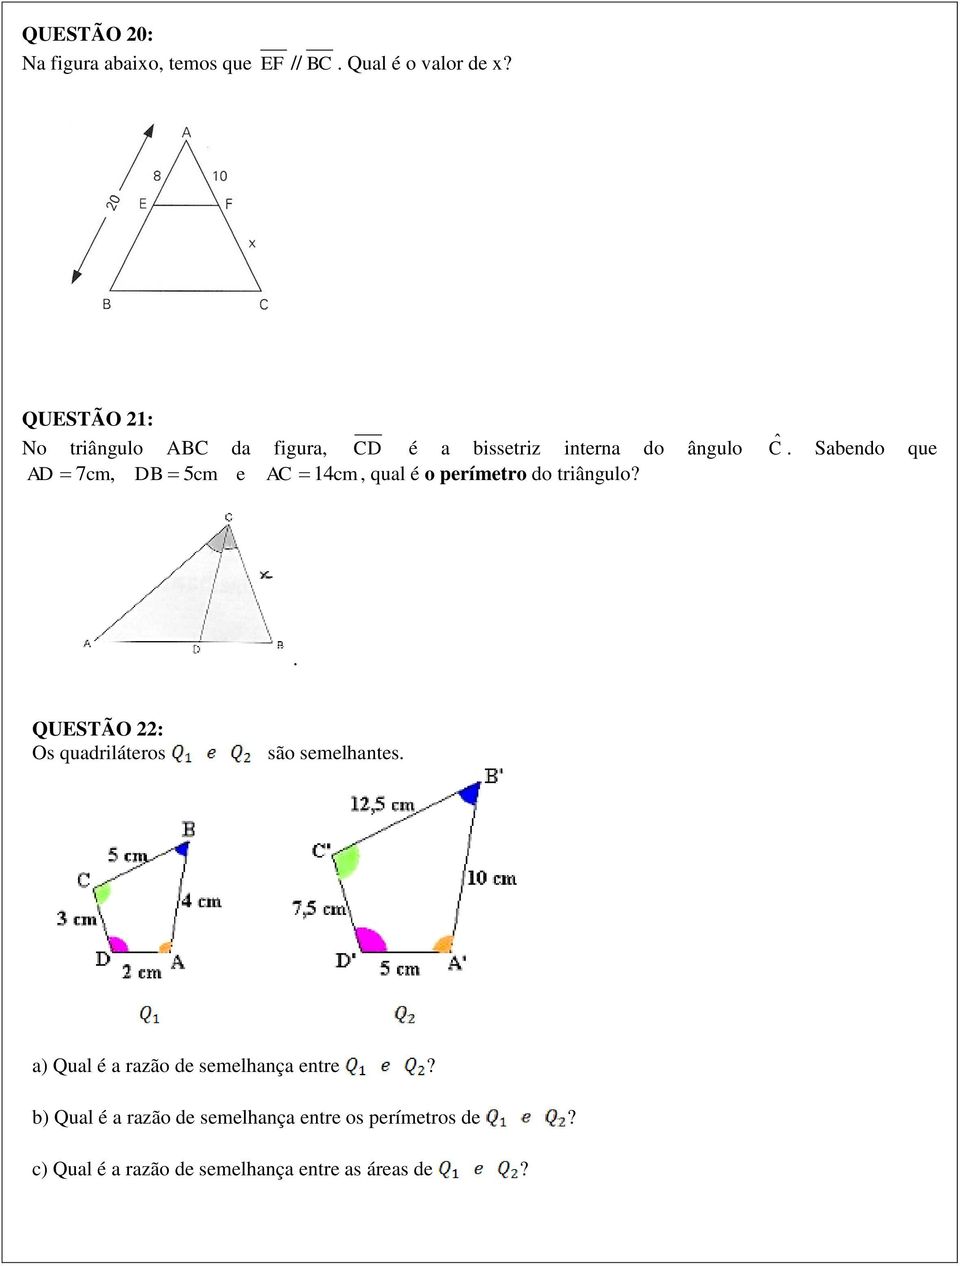 Sabendo que AD 7cm, DB 5cm e AC 14cm, qual é o perímetro do triângulo?